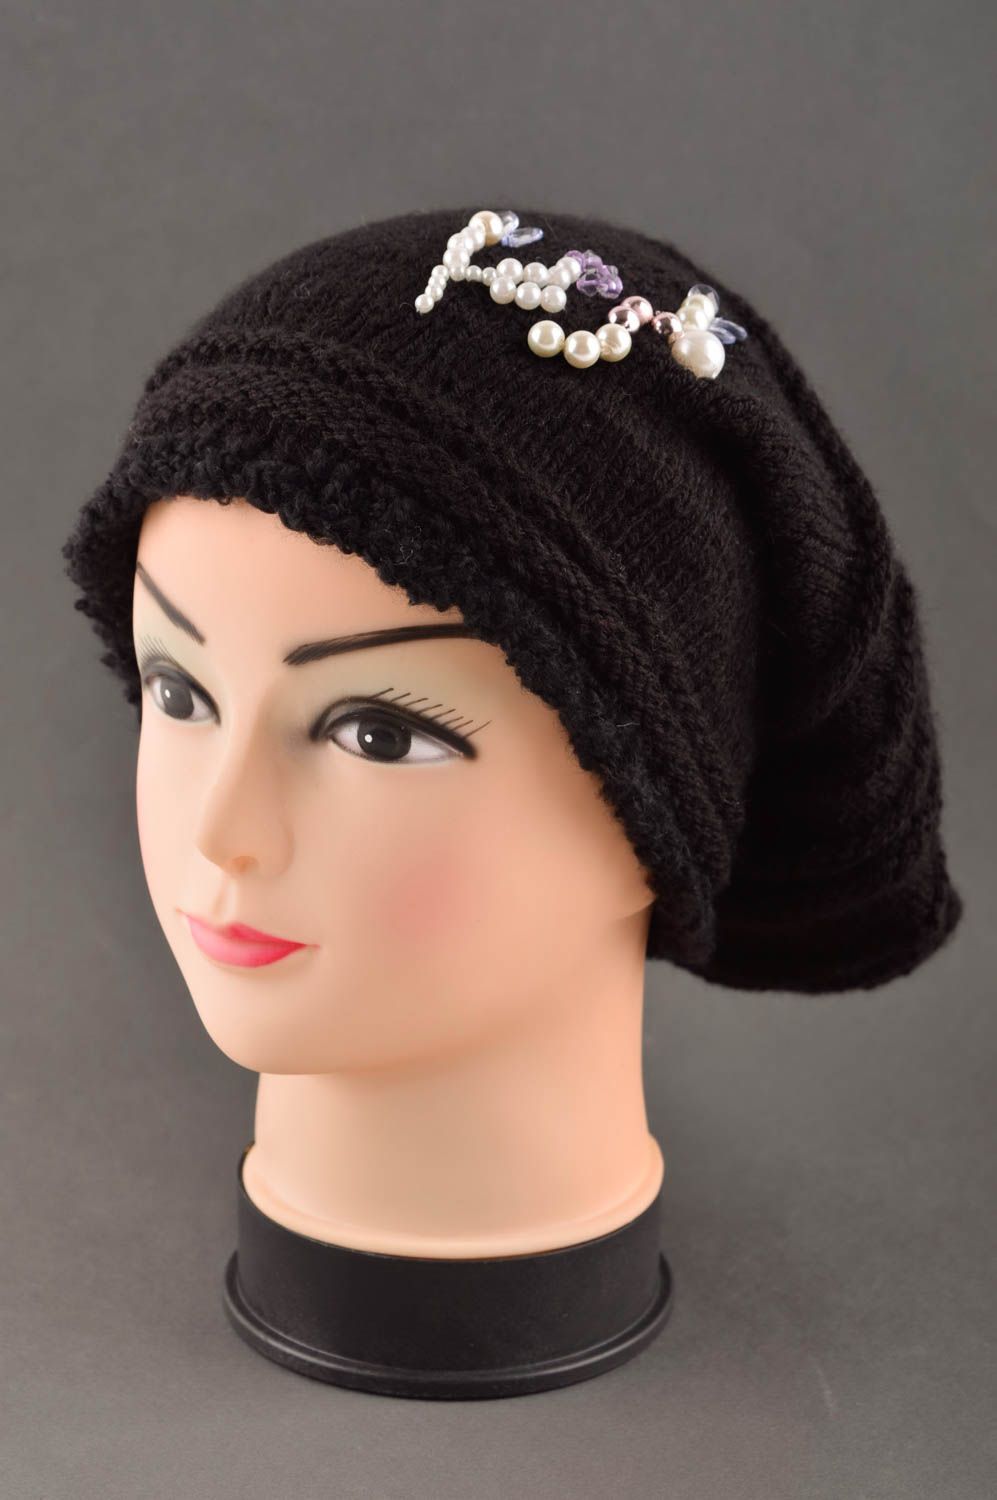 Handmade winter hat designer hat for girl unusual hat crocheted hats for girl photo 1